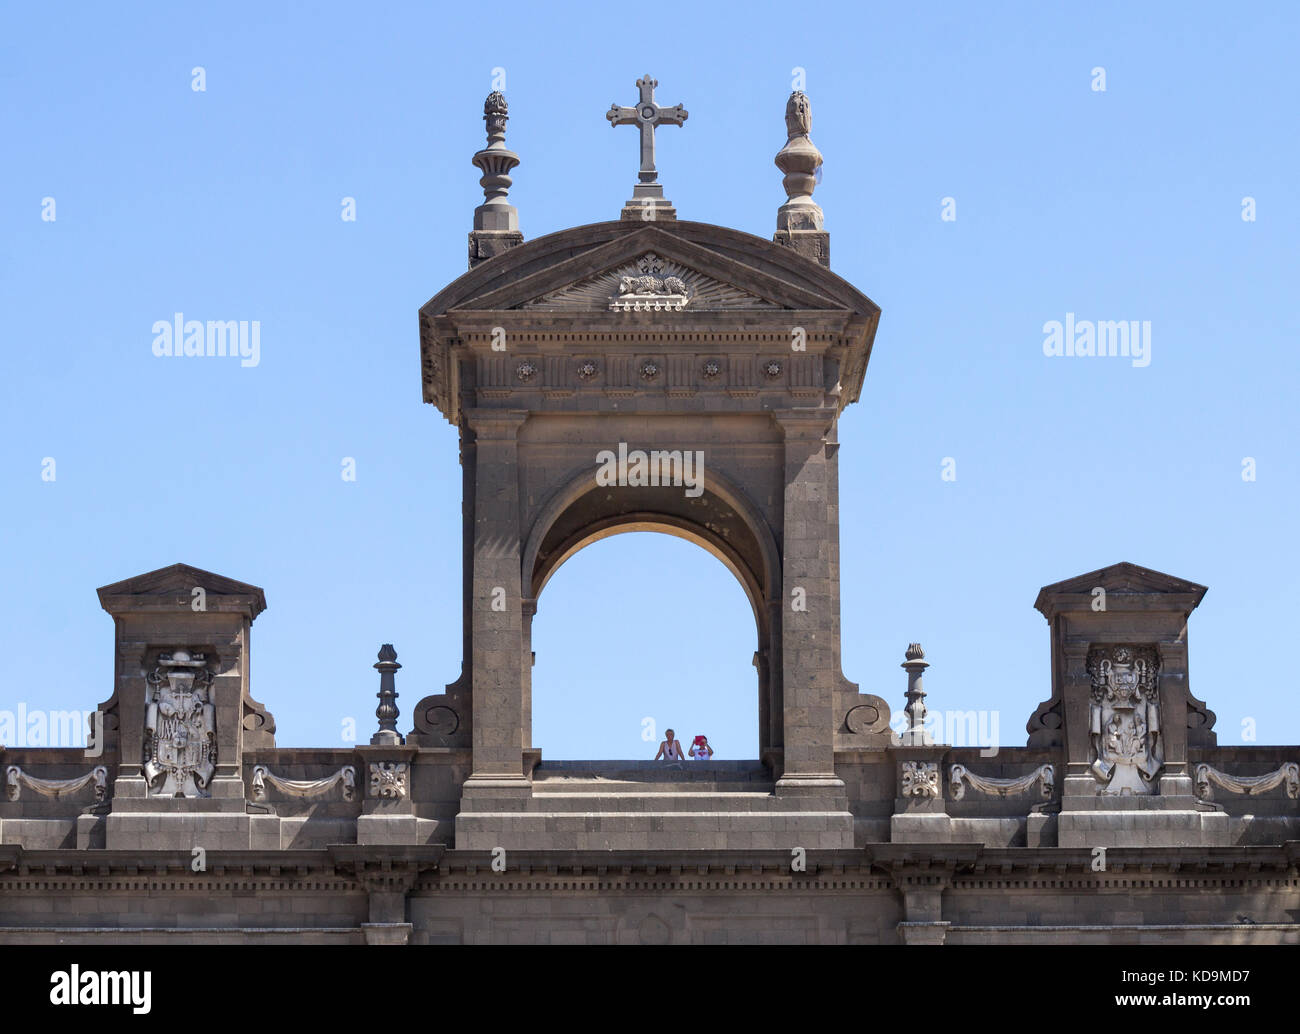 Les touristes à la recherche sur la Plaza Santa Ana à partir de la cathédrale de Santa Ana, vegueta. las palmas, Gran Canaria, îles canaries, espagne Banque D'Images